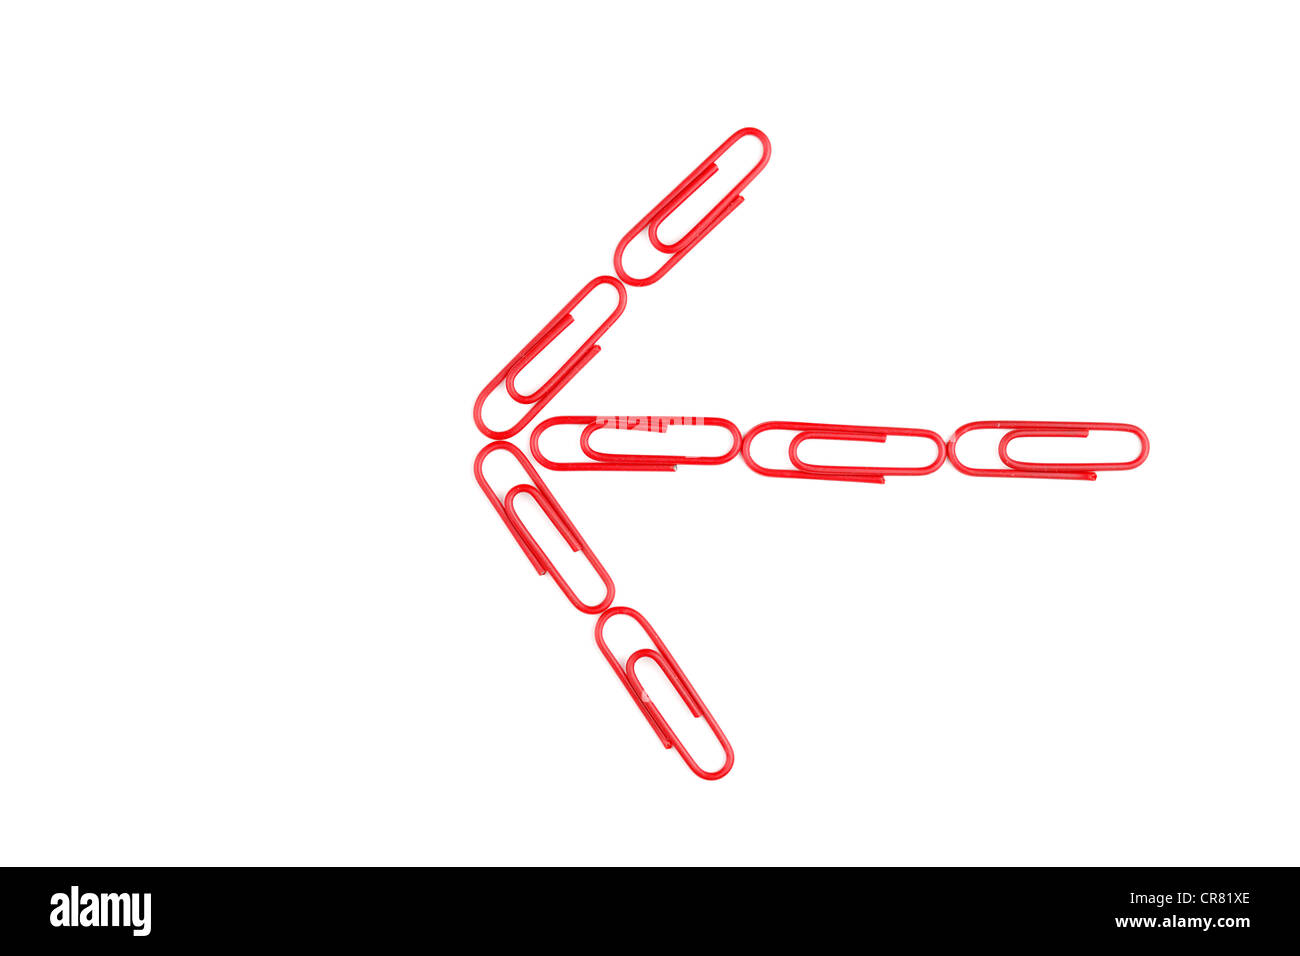 Freccia fatta di carta rossa clip, immagine simbolica per dare un orientamento Foto Stock